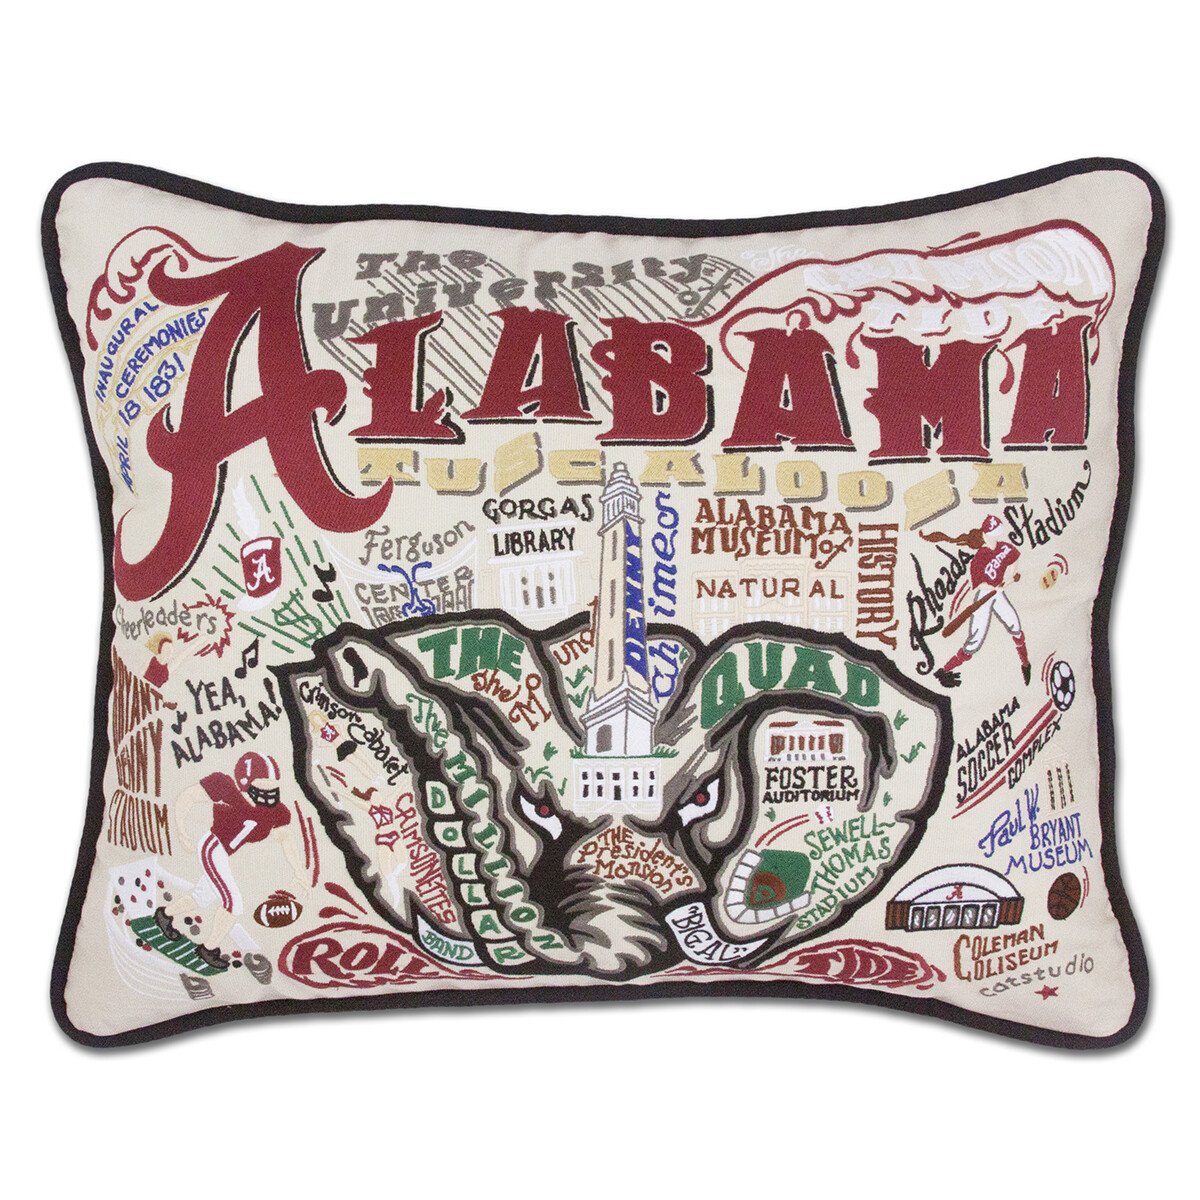 Alabama pillow